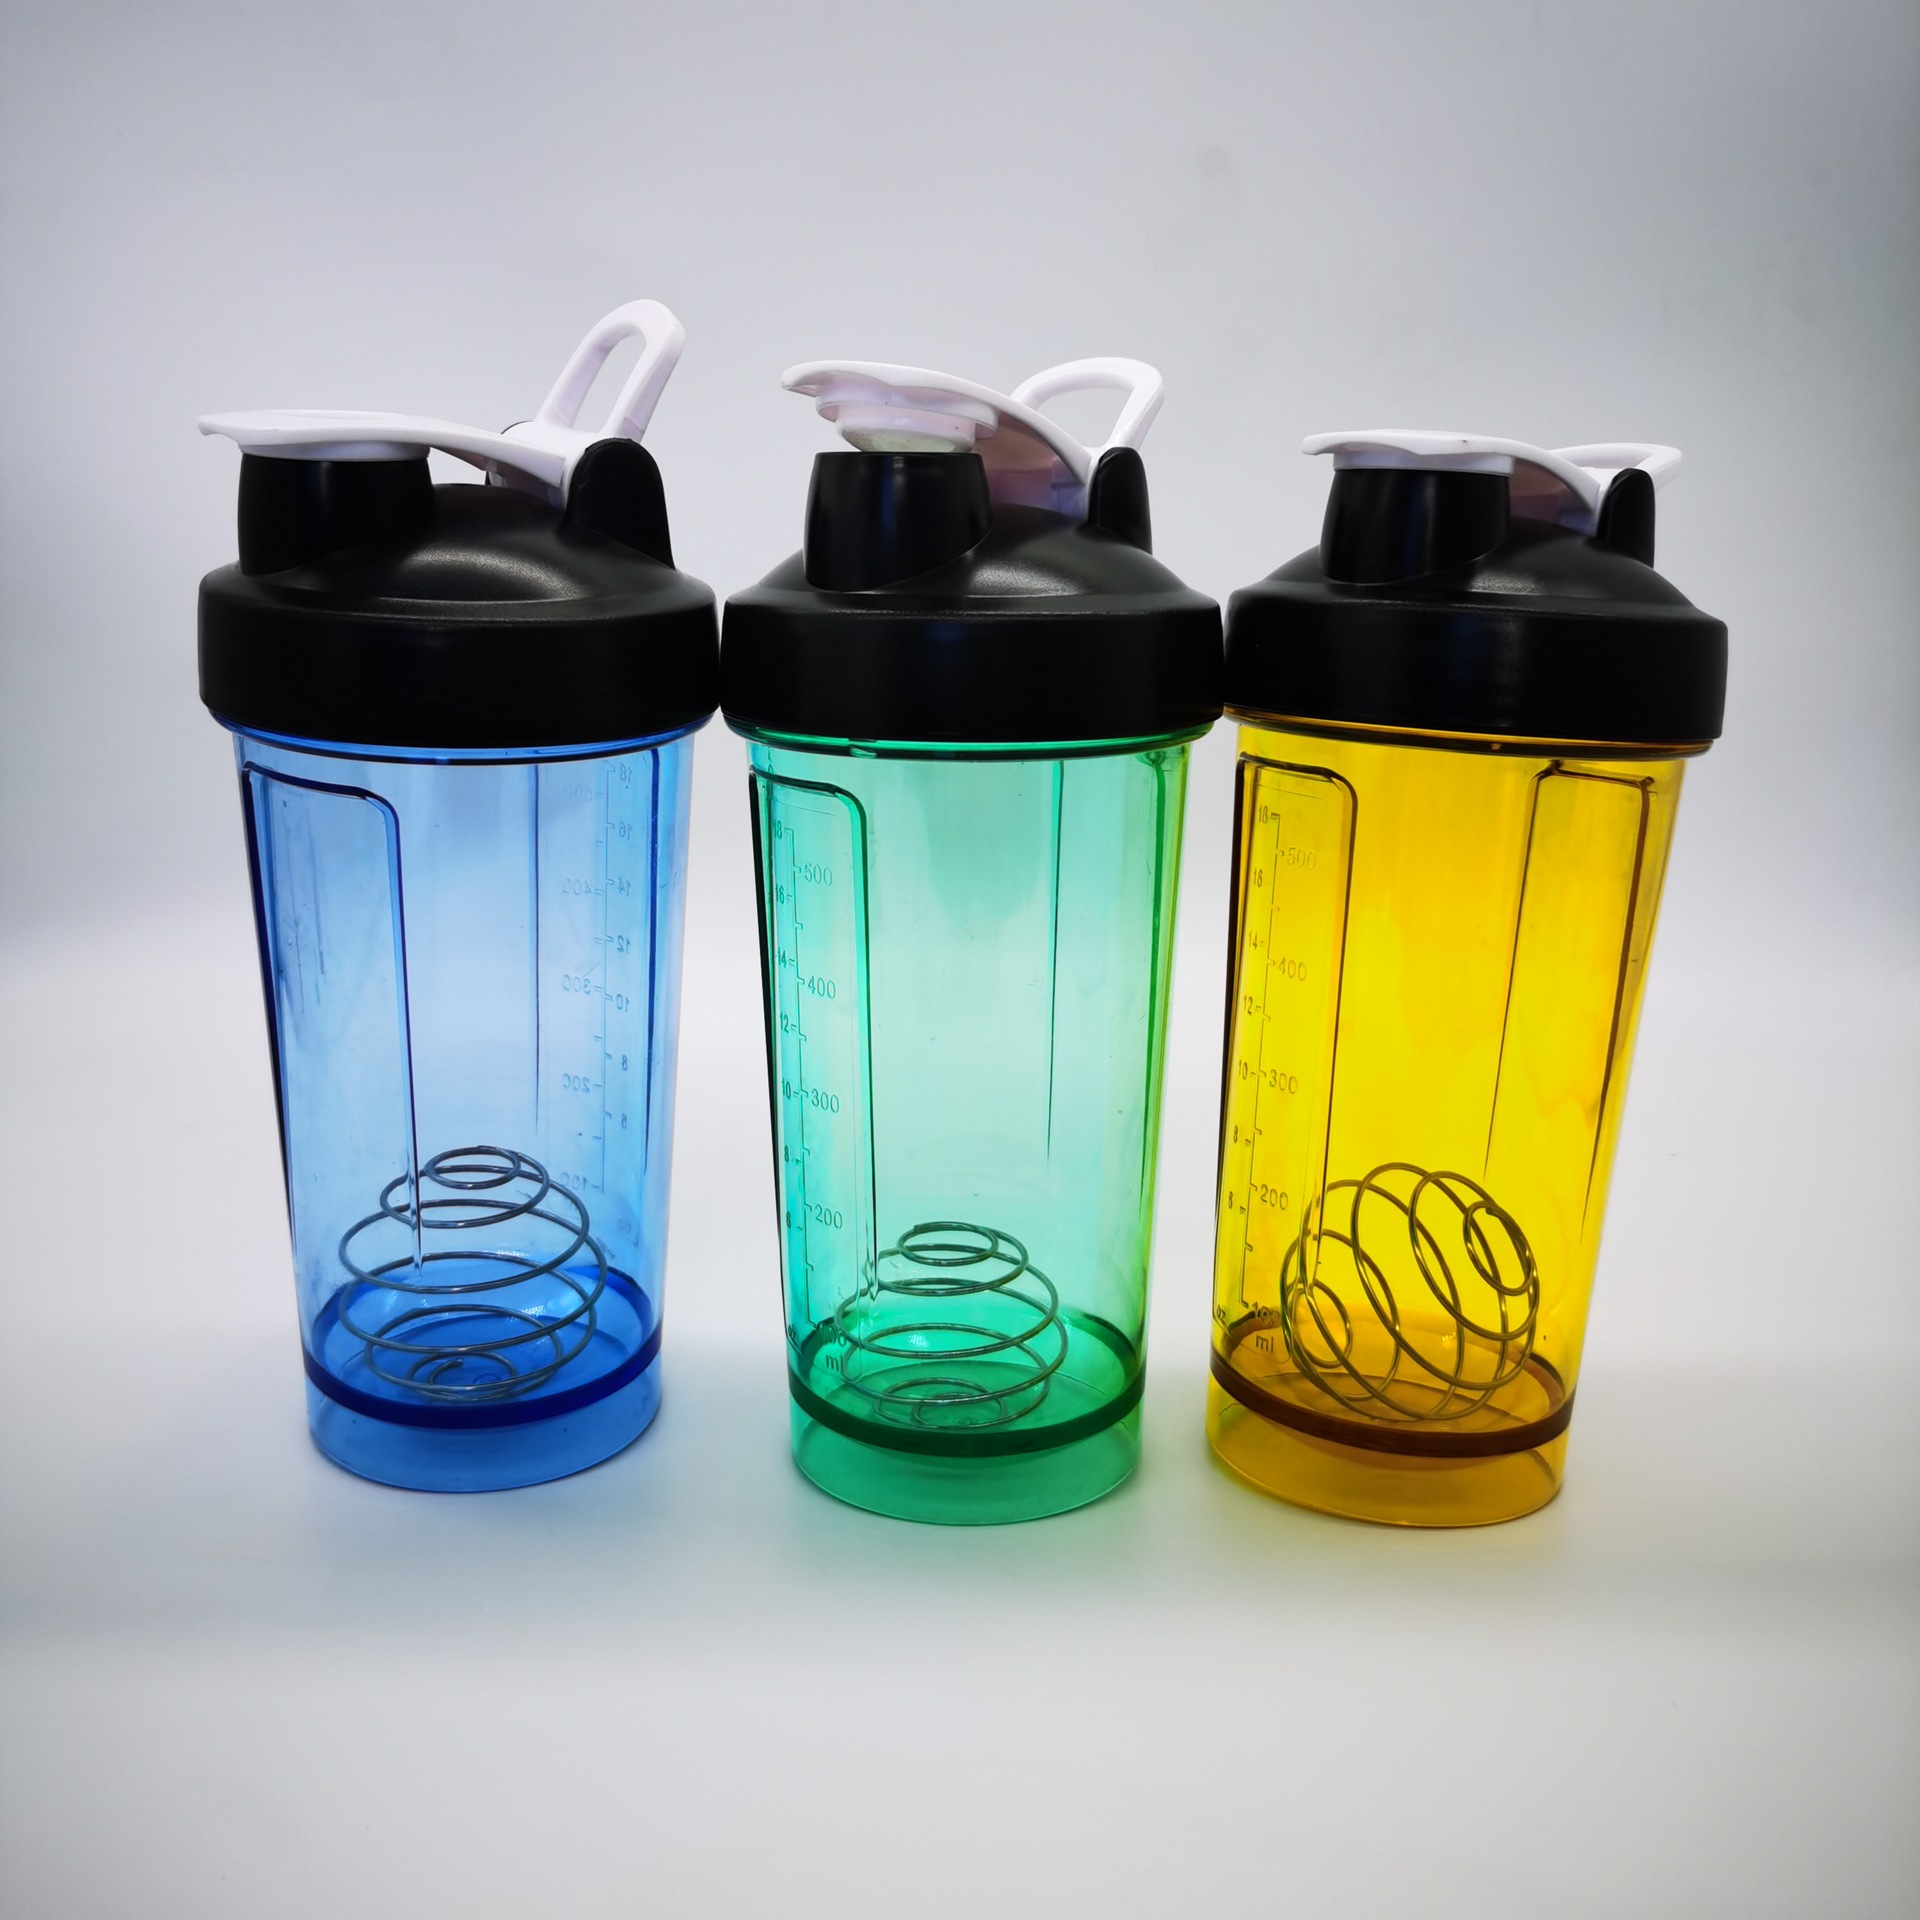 16 oz. Plastic Shaker Bottles - Buy plastic bottle, shaker bottle ...